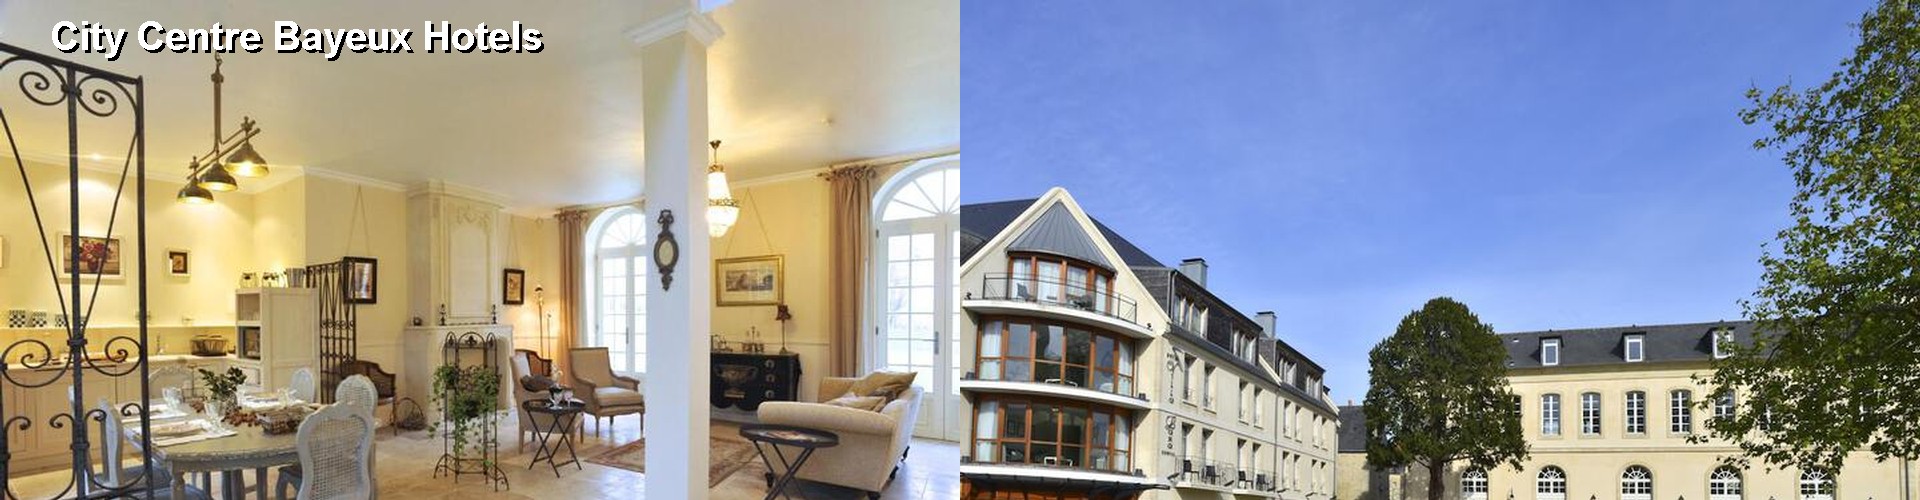 5 Best Hotels near City Centre Bayeux